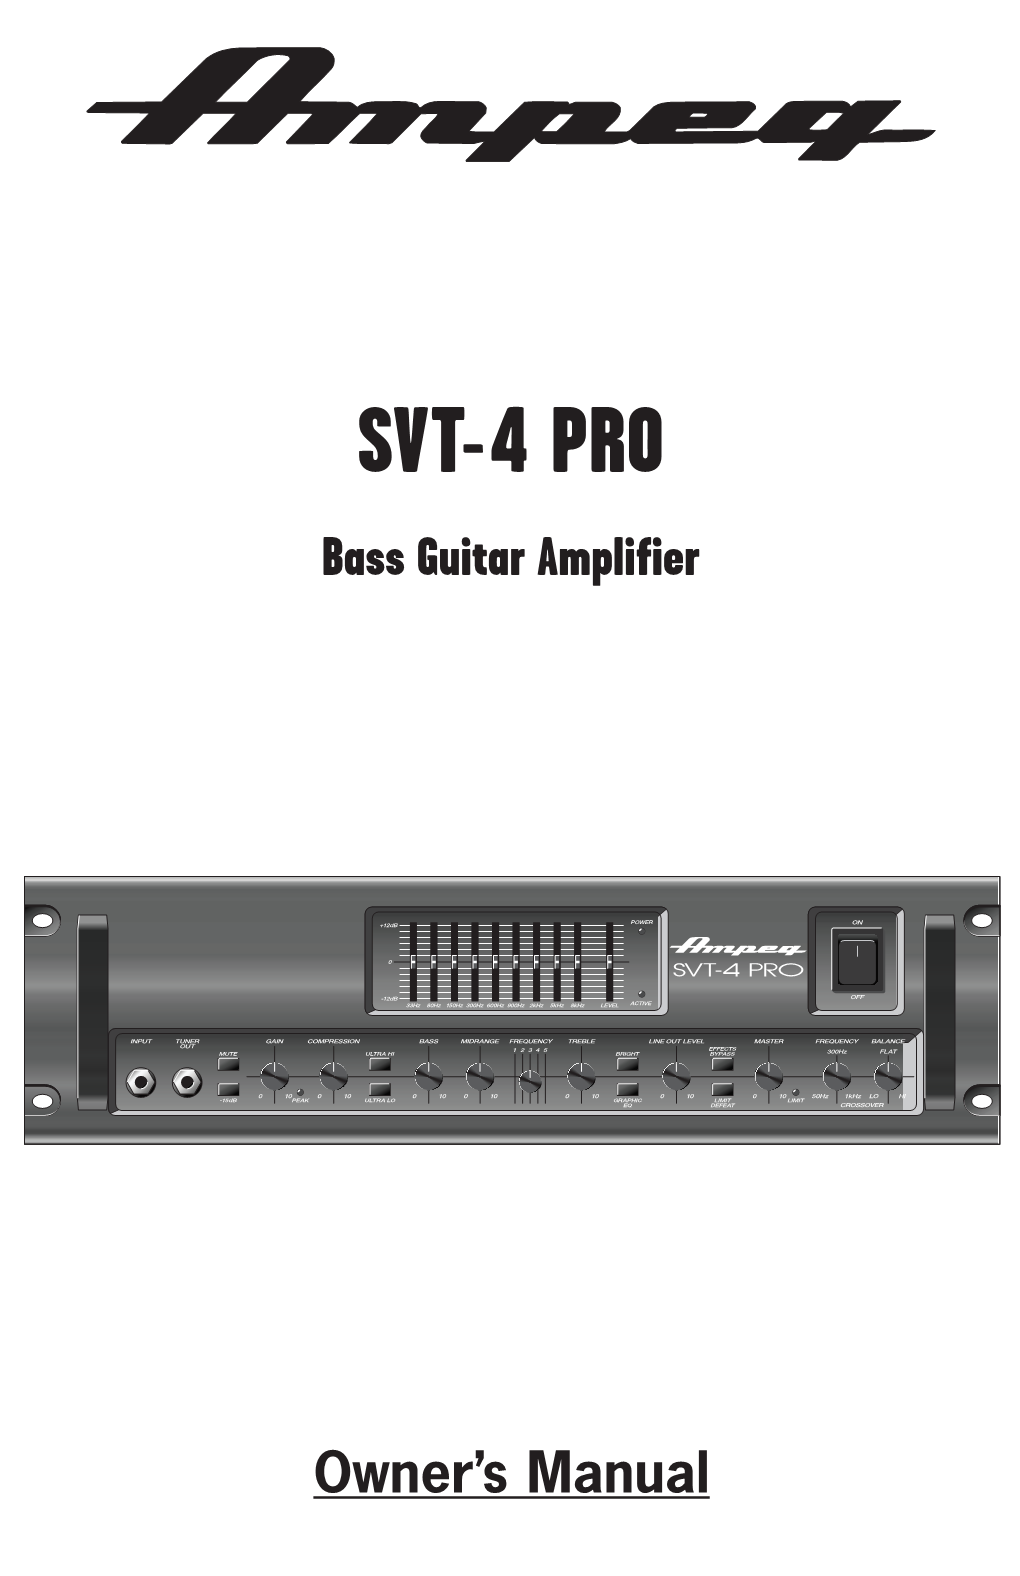 SVT-4 PRO Bass Guitar Amplifier